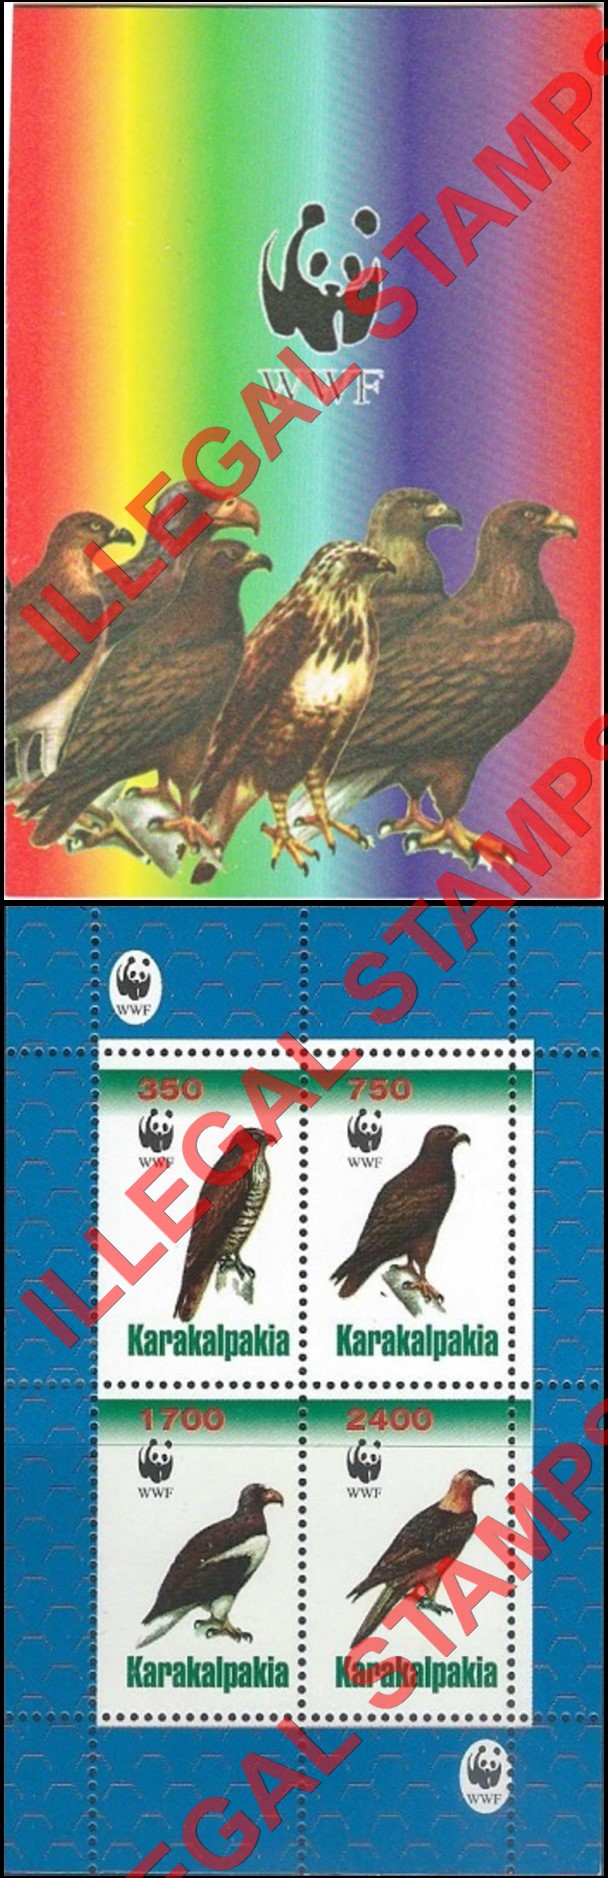 KARAKALPAKIA 1998 Birds of Prey with WWF Logo Counterfeit Illegal Stamp Souvenir Sheet of 4 Booklet